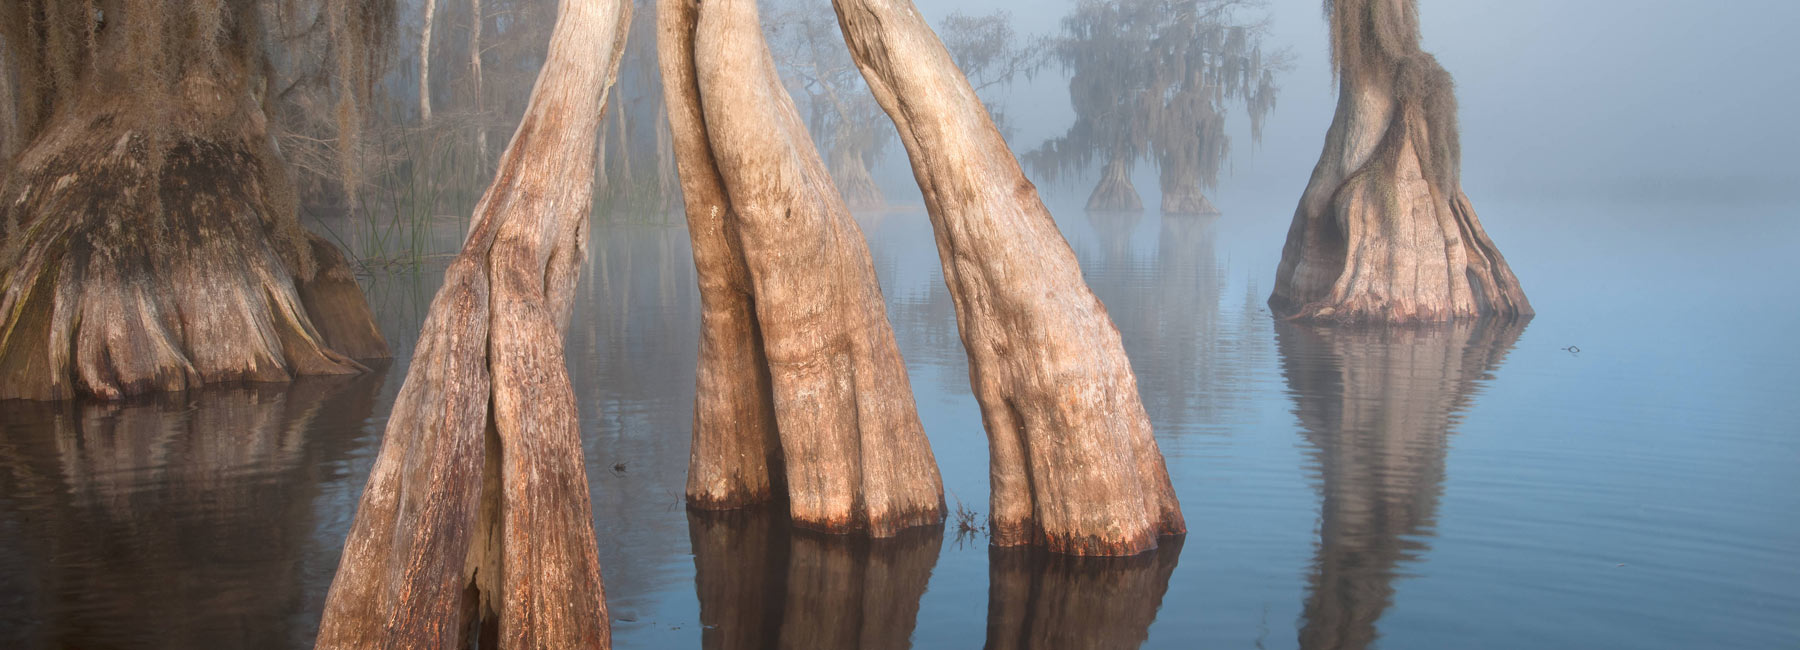 cypress swamp fog